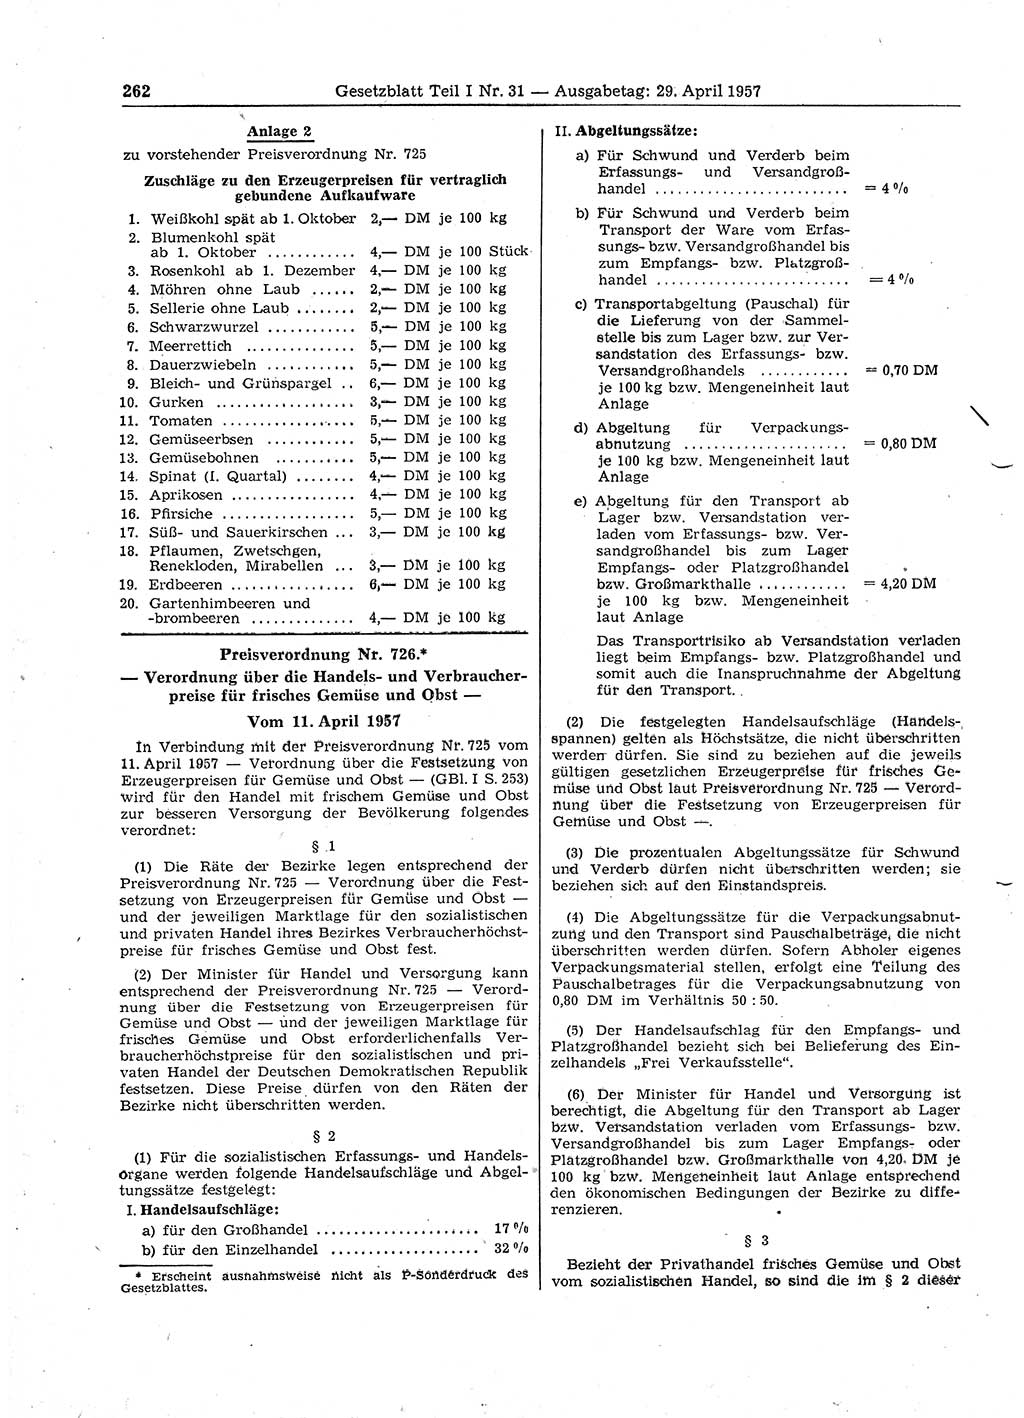 Gesetzblatt (GBl.) der Deutschen Demokratischen Republik (DDR) Teil Ⅰ 1957, Seite 262 (GBl. DDR Ⅰ 1957, S. 262)